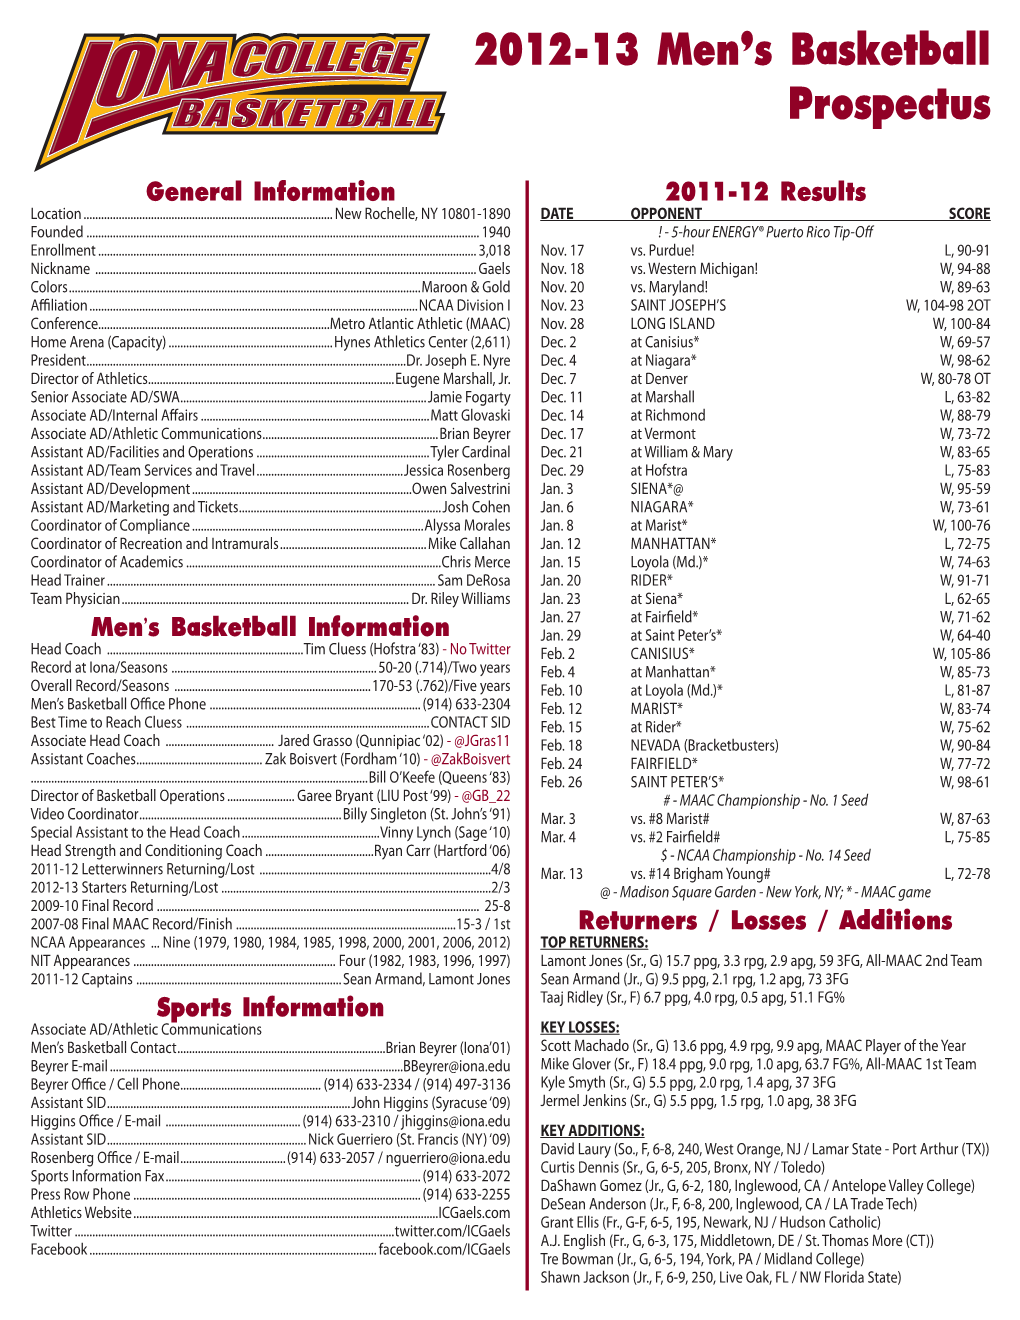 2012-13 Men's Basketball Prospectus